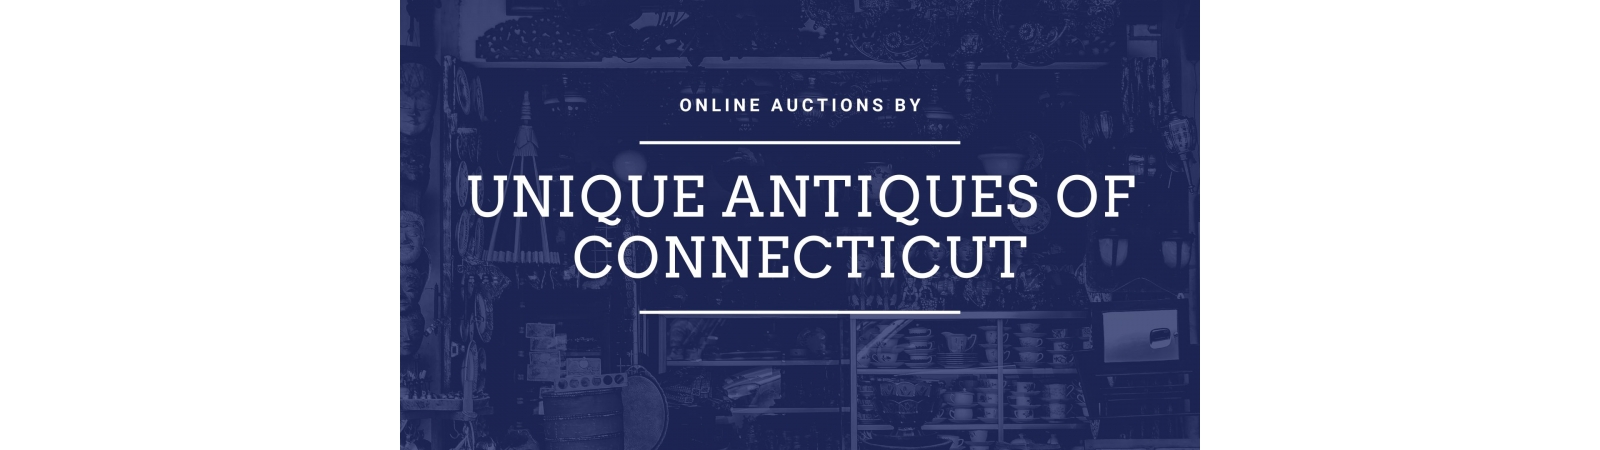 Unique Antiques of Connecticut | AuctionNinja